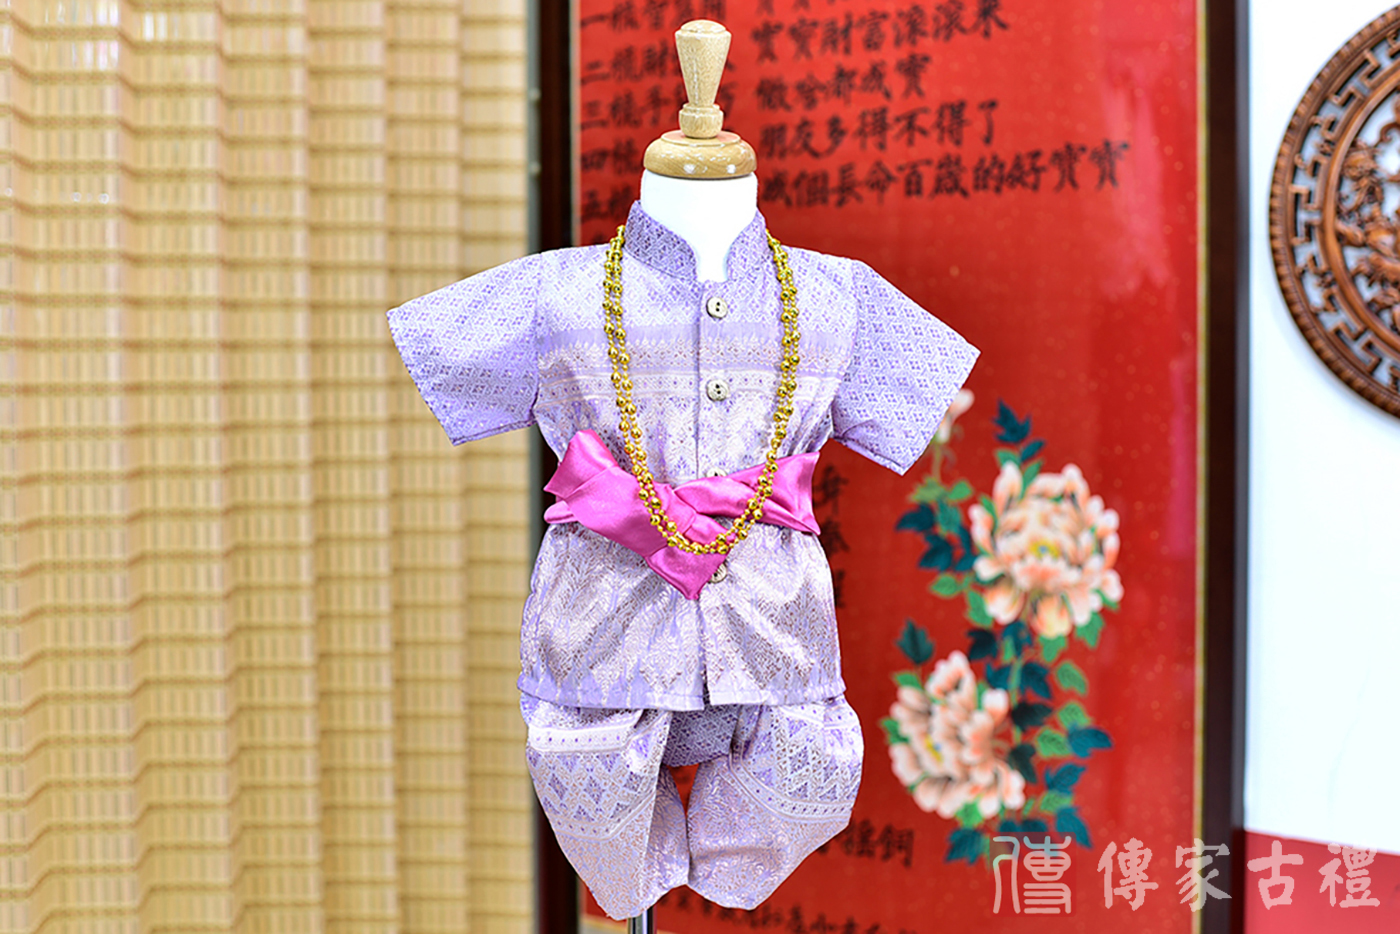 2024-02-24小孩皇室泰服古裝禮服。淡紫色細緻花紋的上衣搭配同色系的褲裝的泰式古裝禮服。照片集